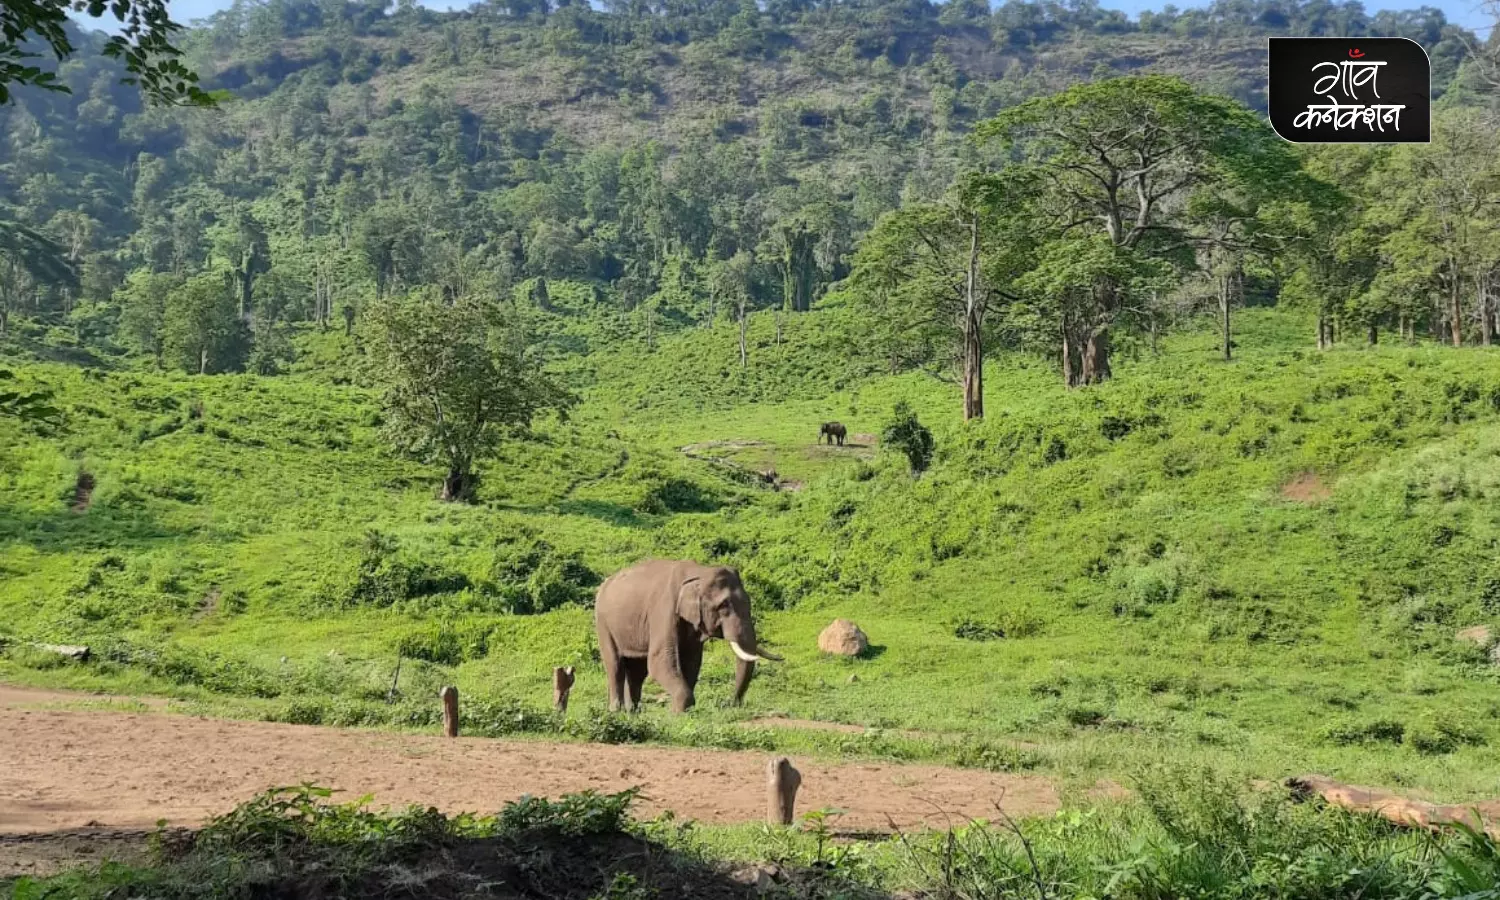 हाथियों-जनजातियों के बीच का रिश्ता और उनसे जुड़ी कई अनोखी कहानियाँ